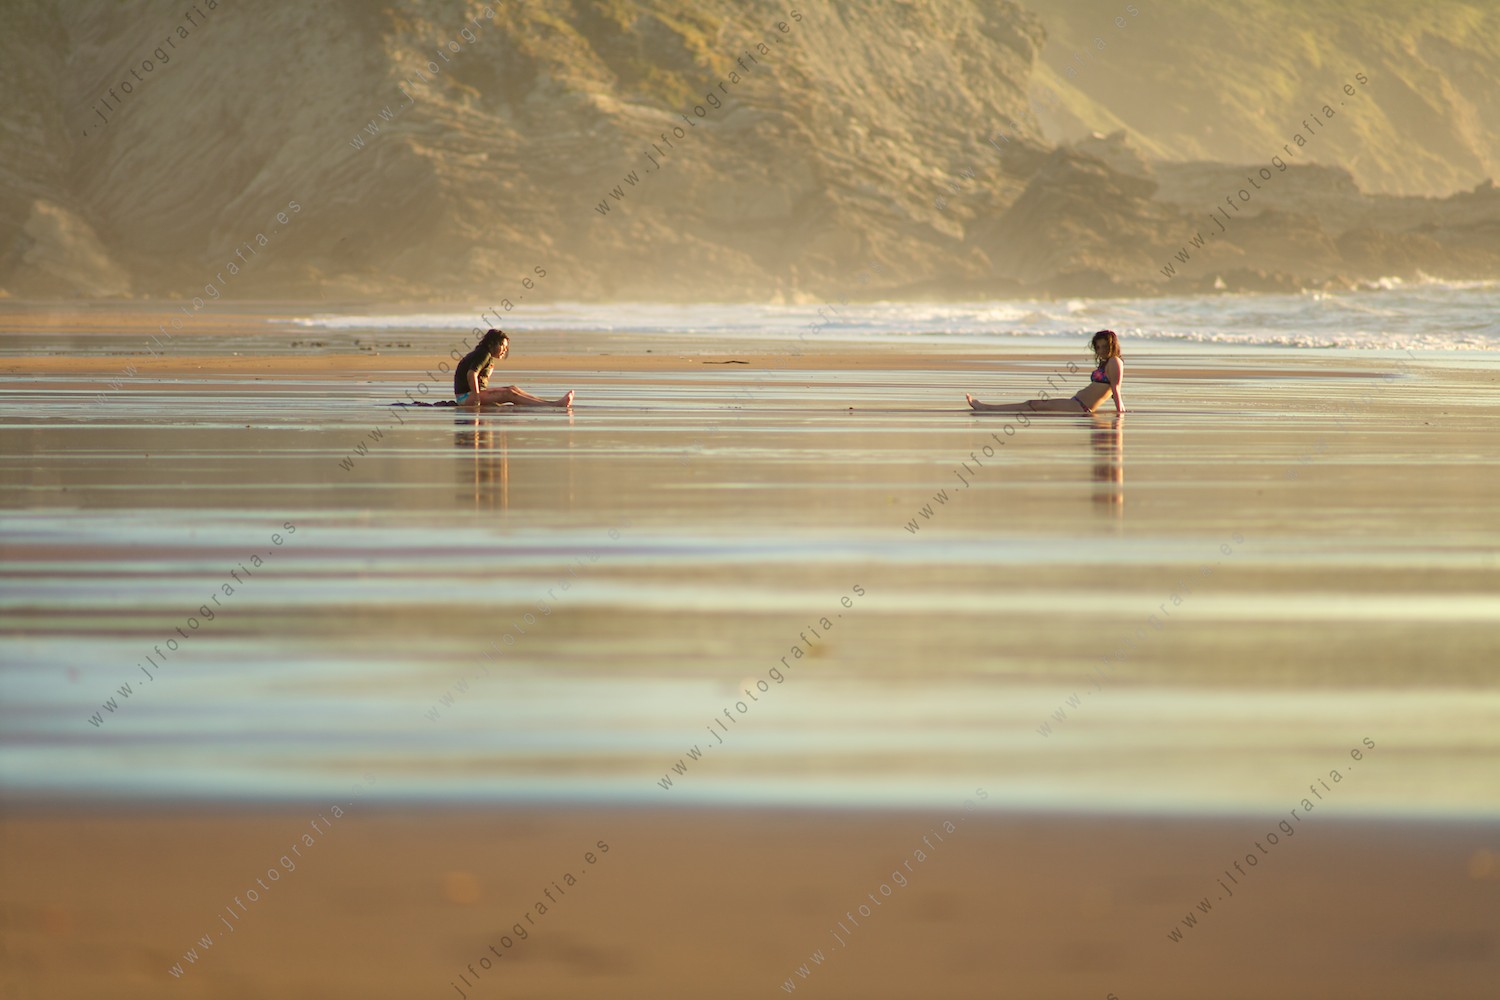 Dos jóvenes juegan en la orilla de la playa, sentadas esperando las olas